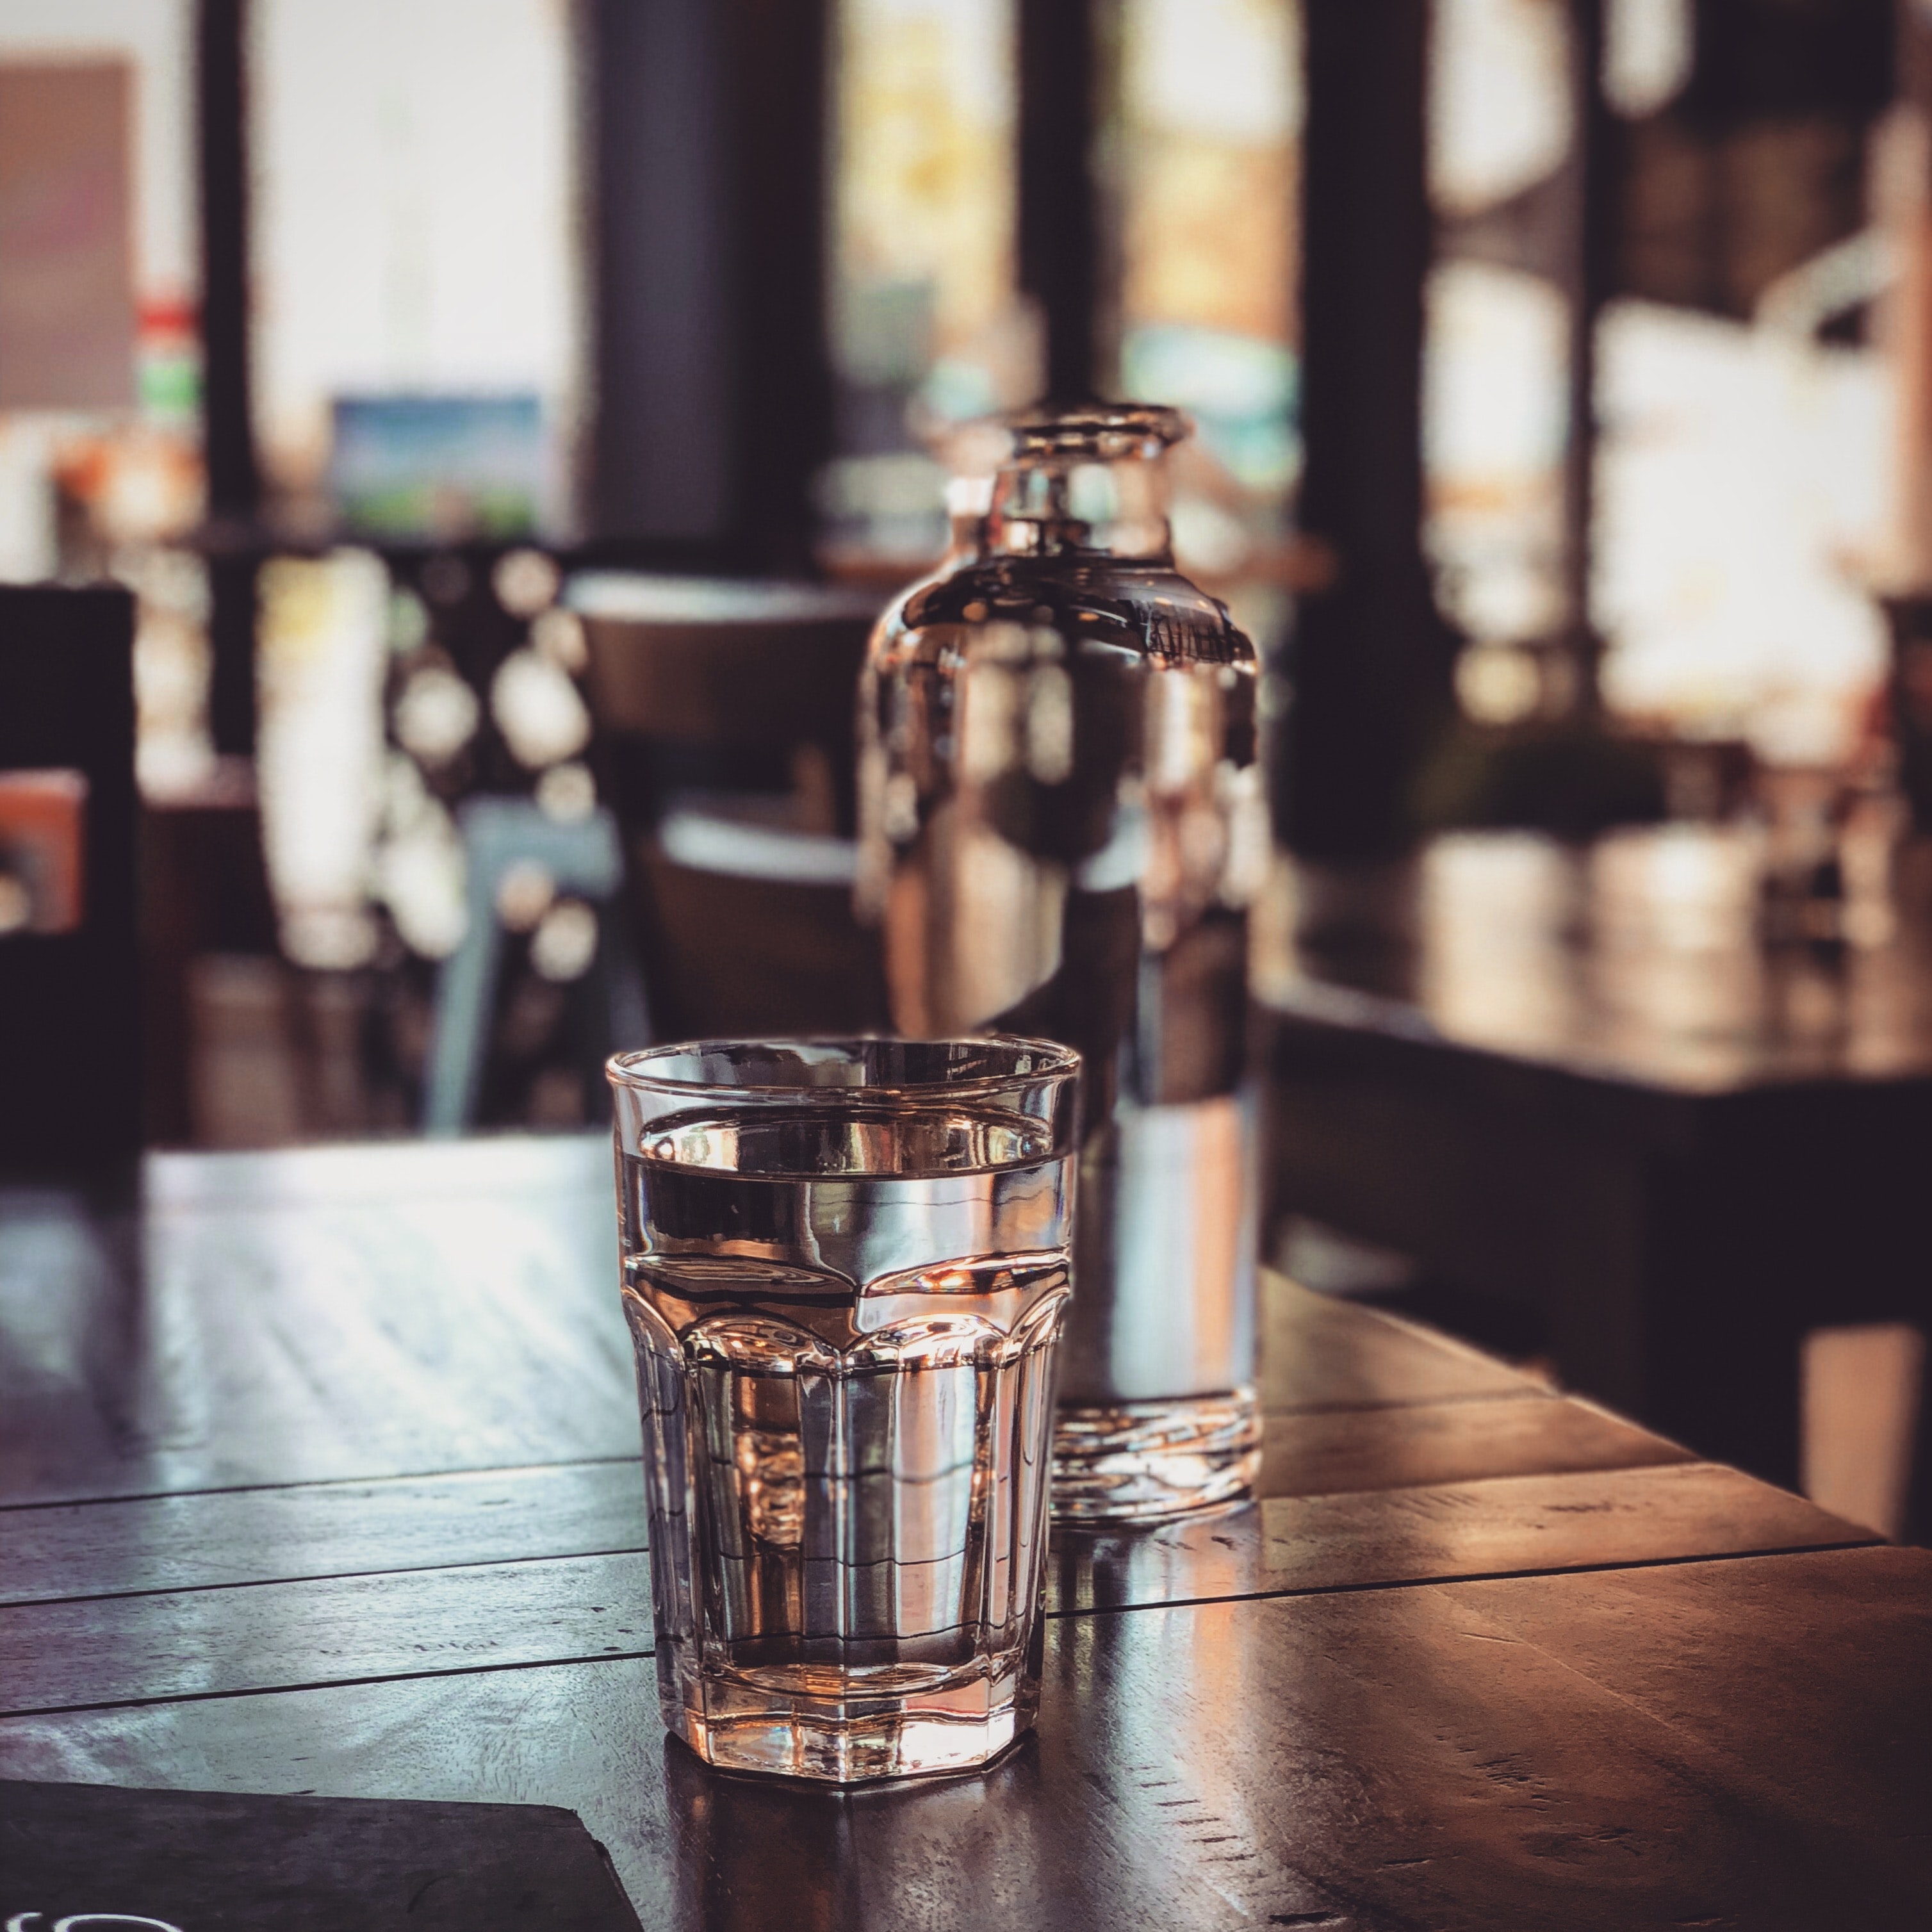 Vandens stiklinė ant stalo